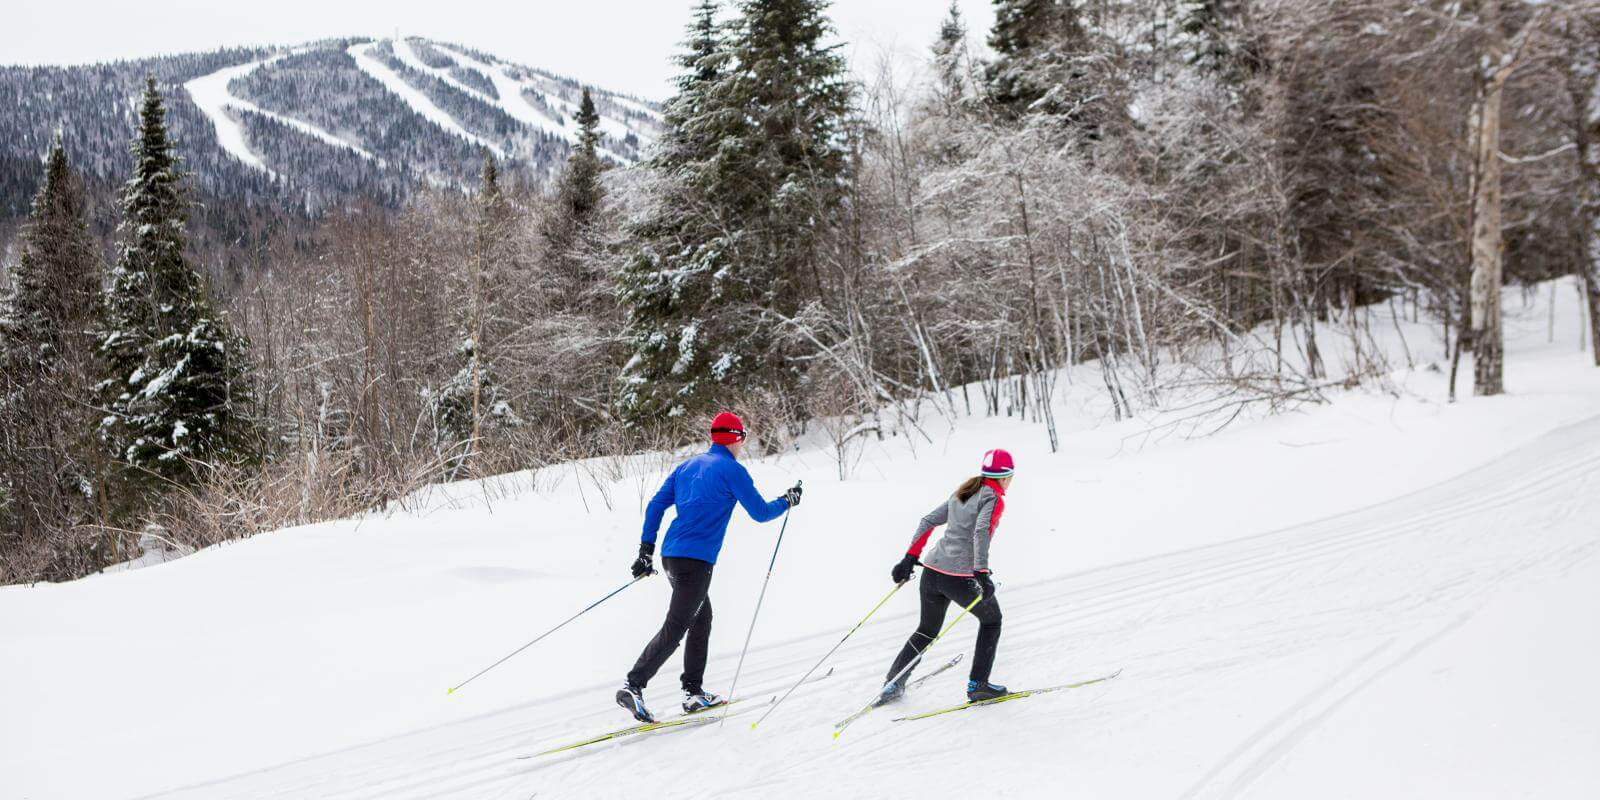 Les meilleurs endroits pour faire du ski de fond